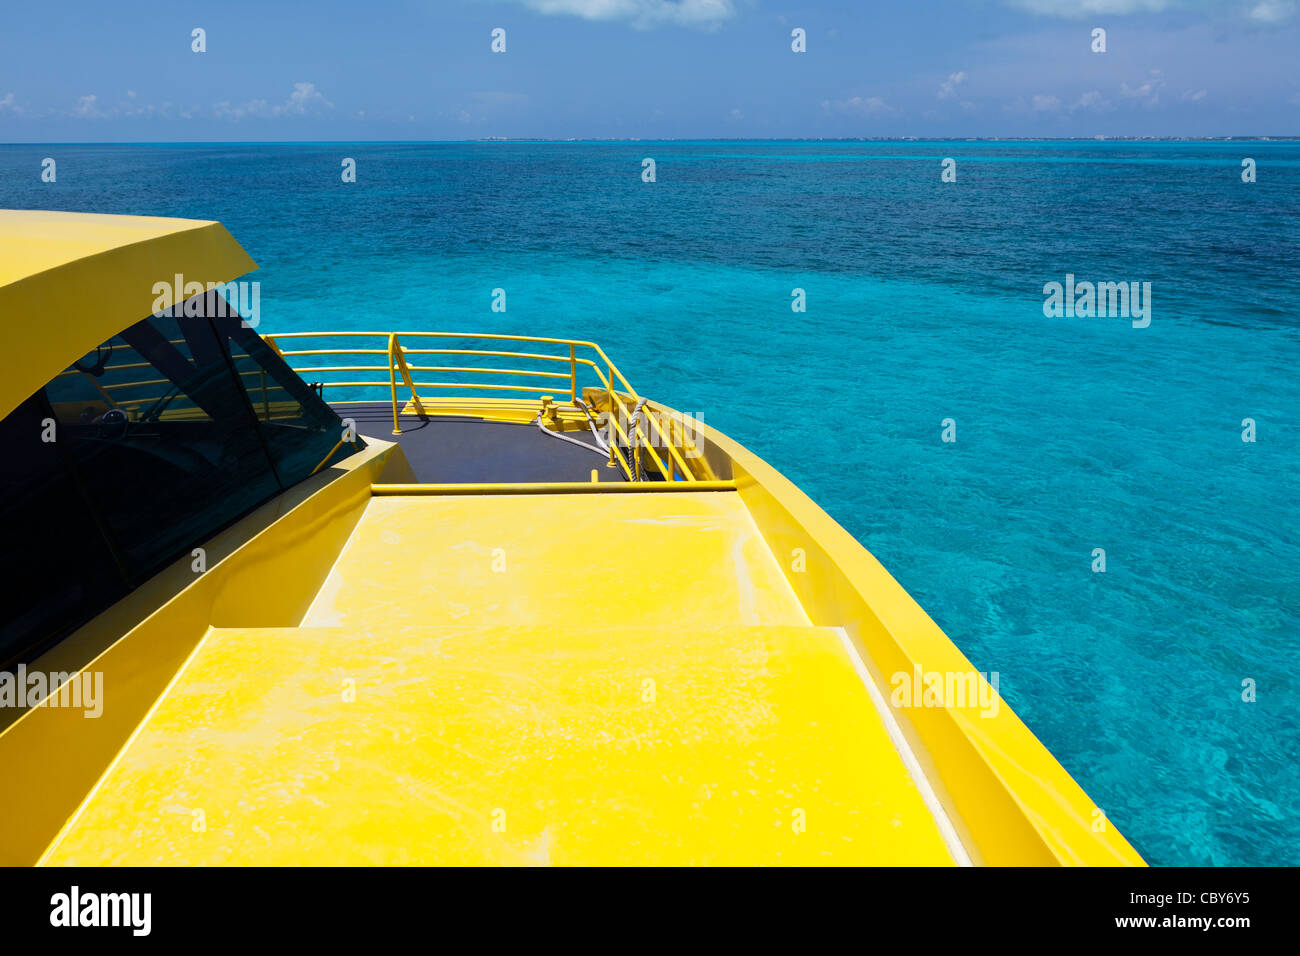 Vista al mar desde la cubierta de un barco amarillo brillante Foto de stock